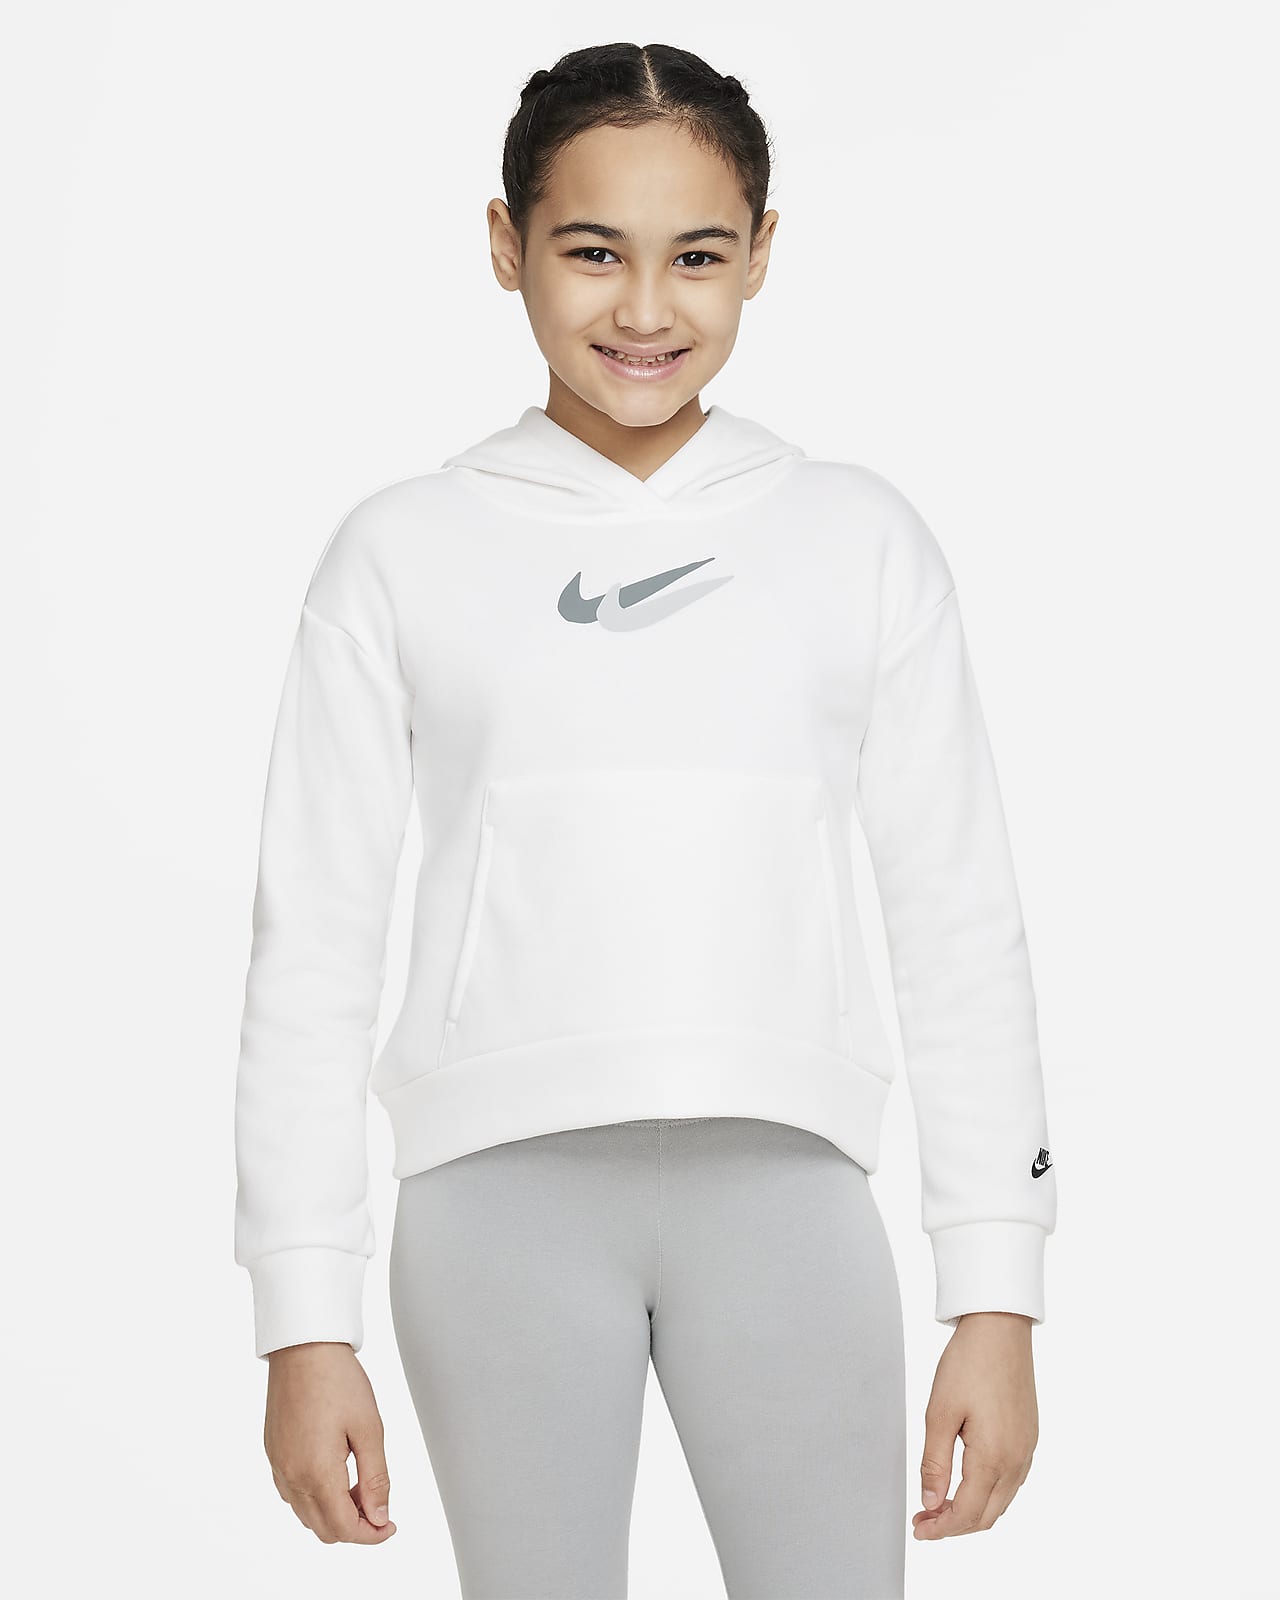 Flísová mikina s kapucí Nike Sportswear pro větší děti (dívky)